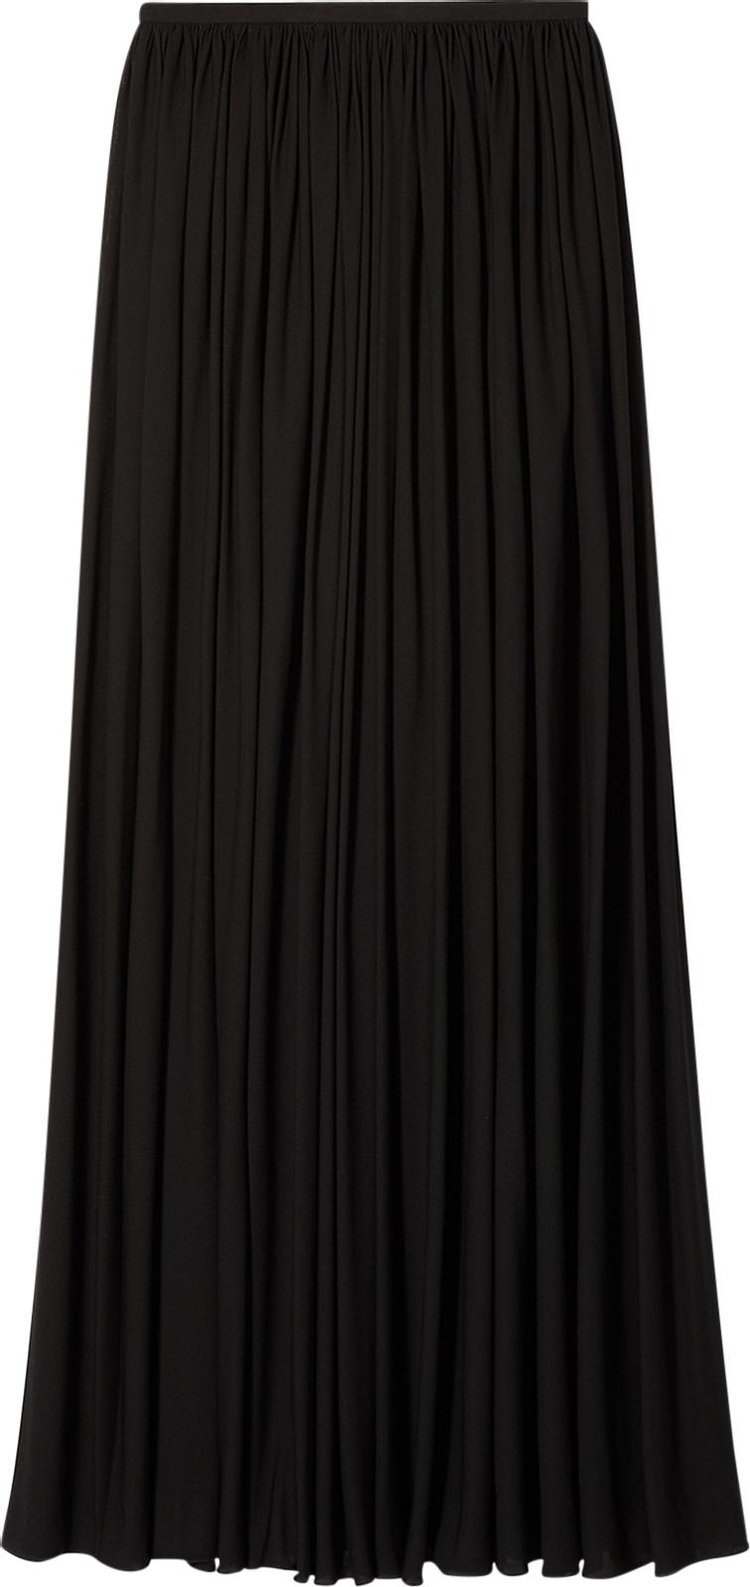 Khaite Lowell Skirt 'Black'